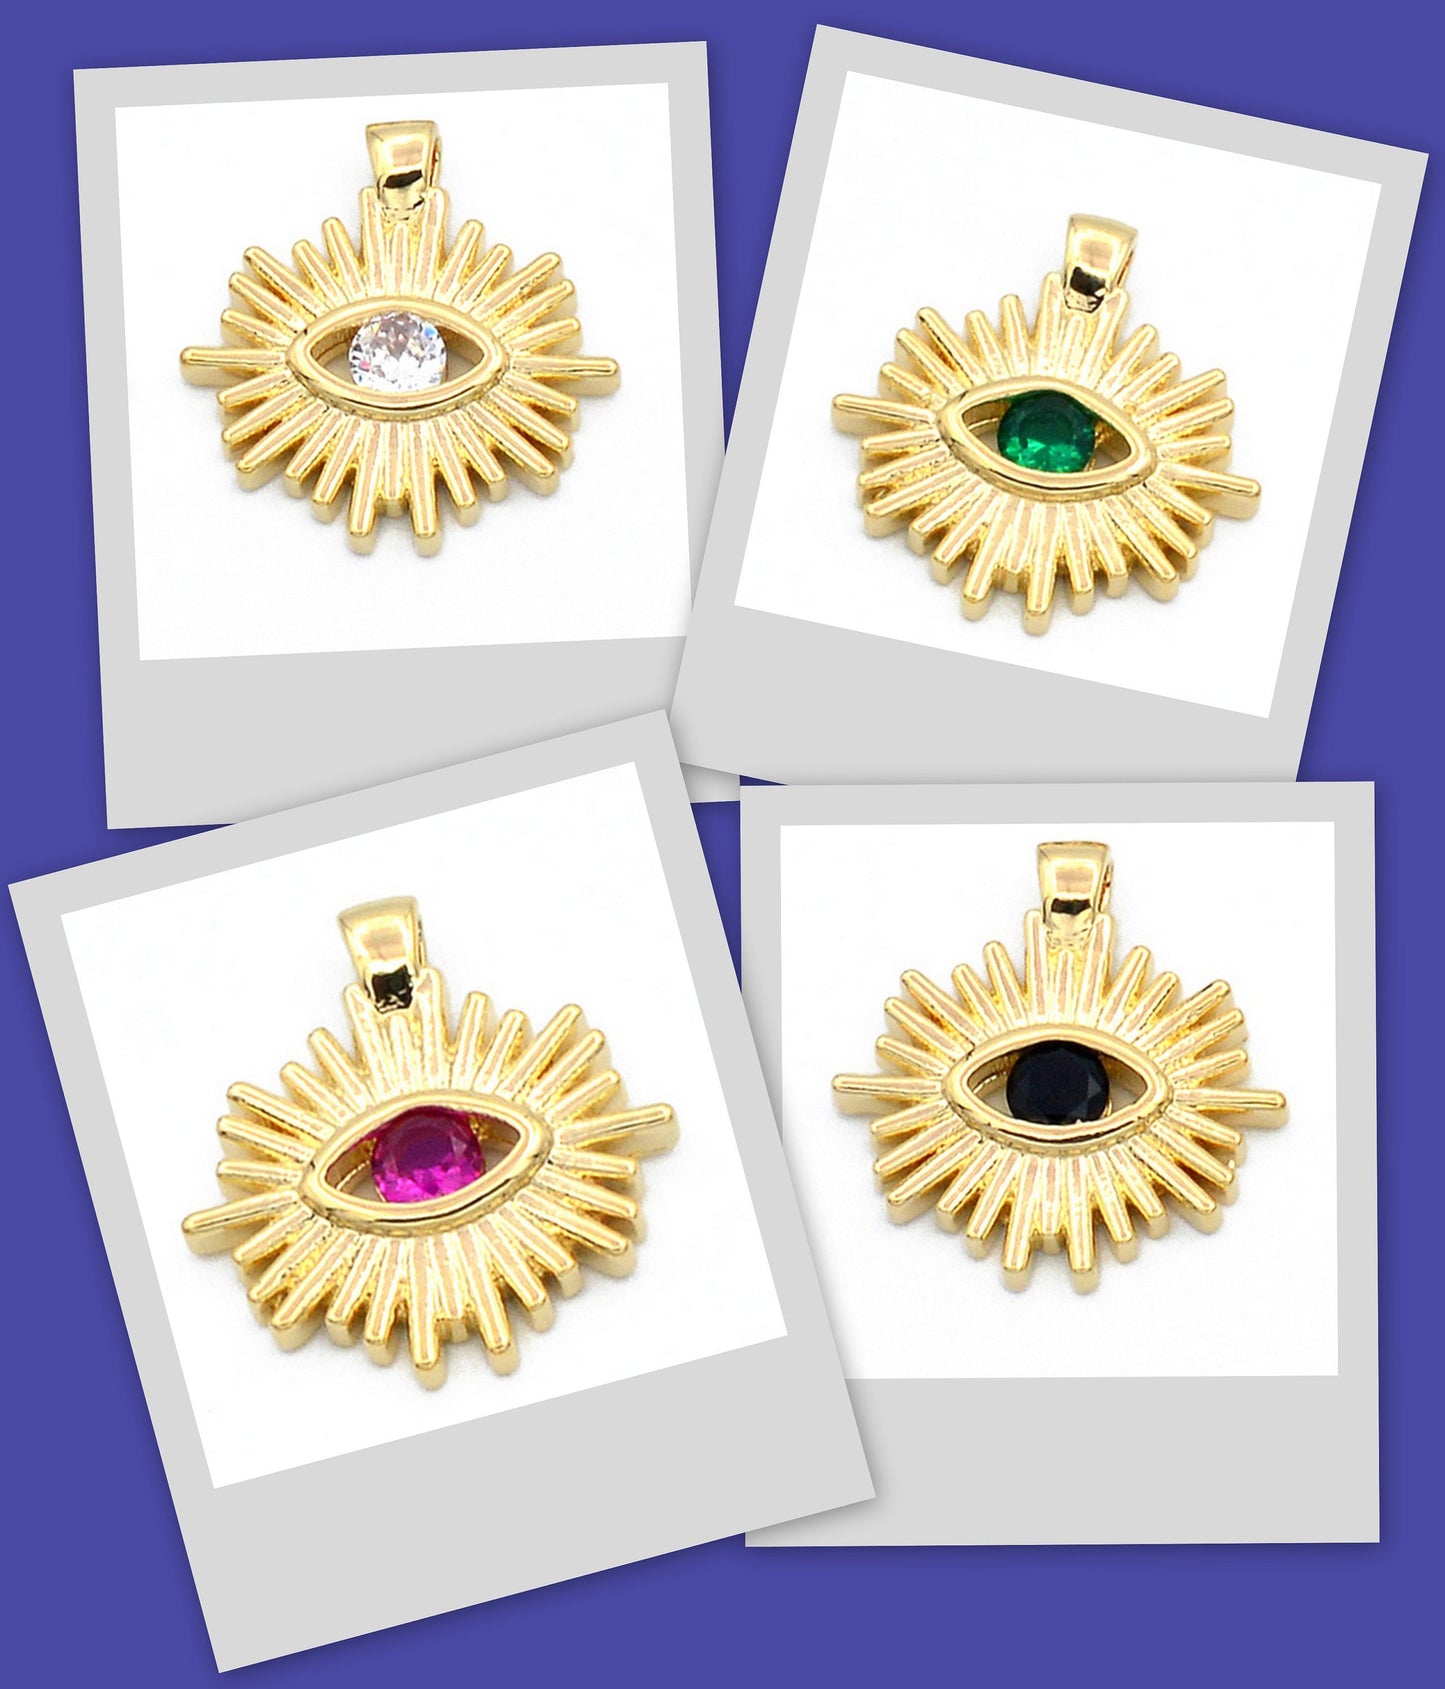 Evil Eye Sun Pendant 14K Gold Filled EP tarnish resistant 16mm Eye clear/Black/Green/Red Cubic Zirconia Diamond Bracelet Charm women gift